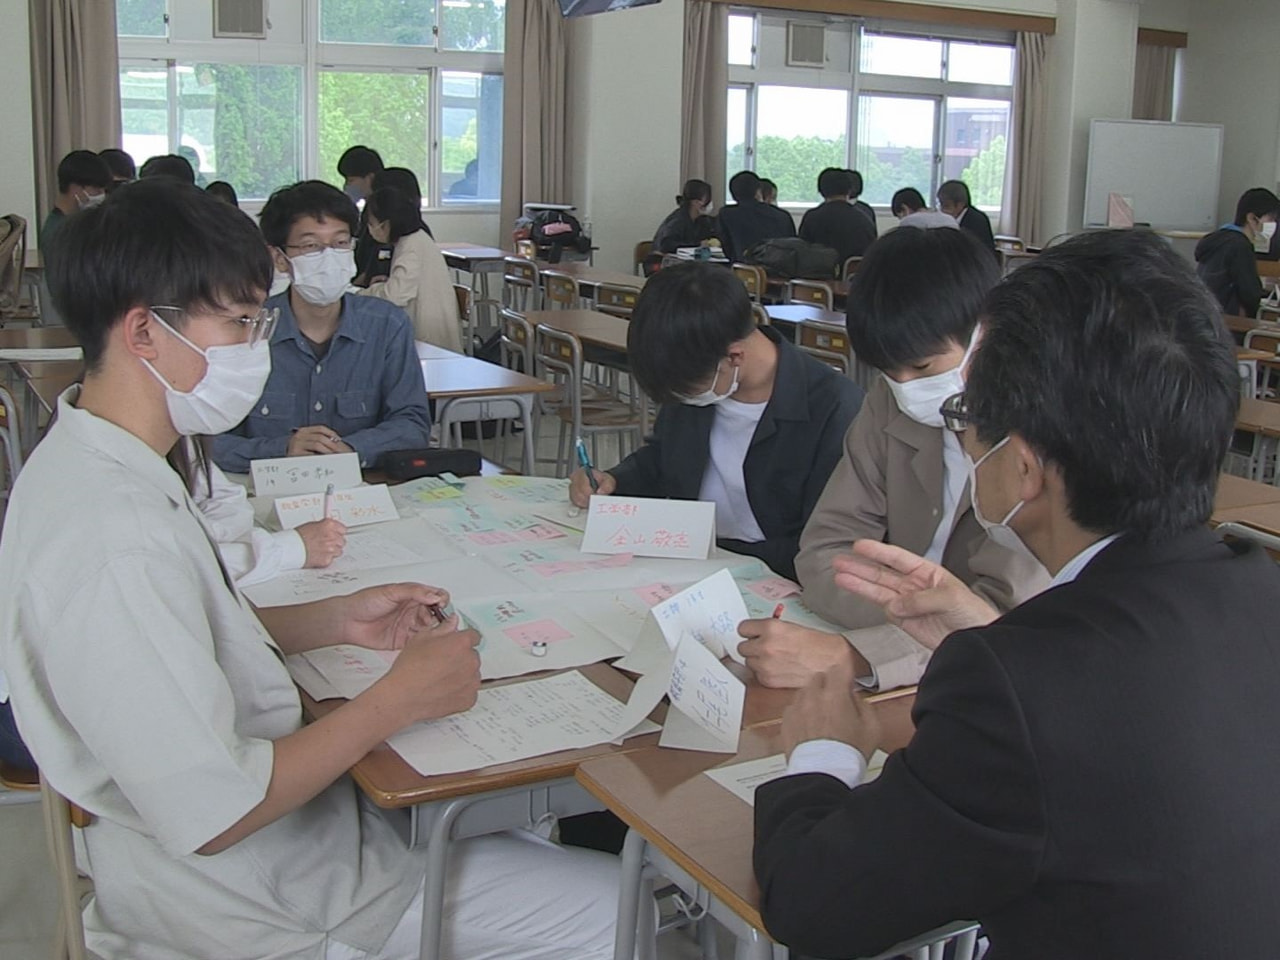 岐阜大学の学生が地域の企業などで活躍する人たちにやりがいなどを取材しました。 こ...